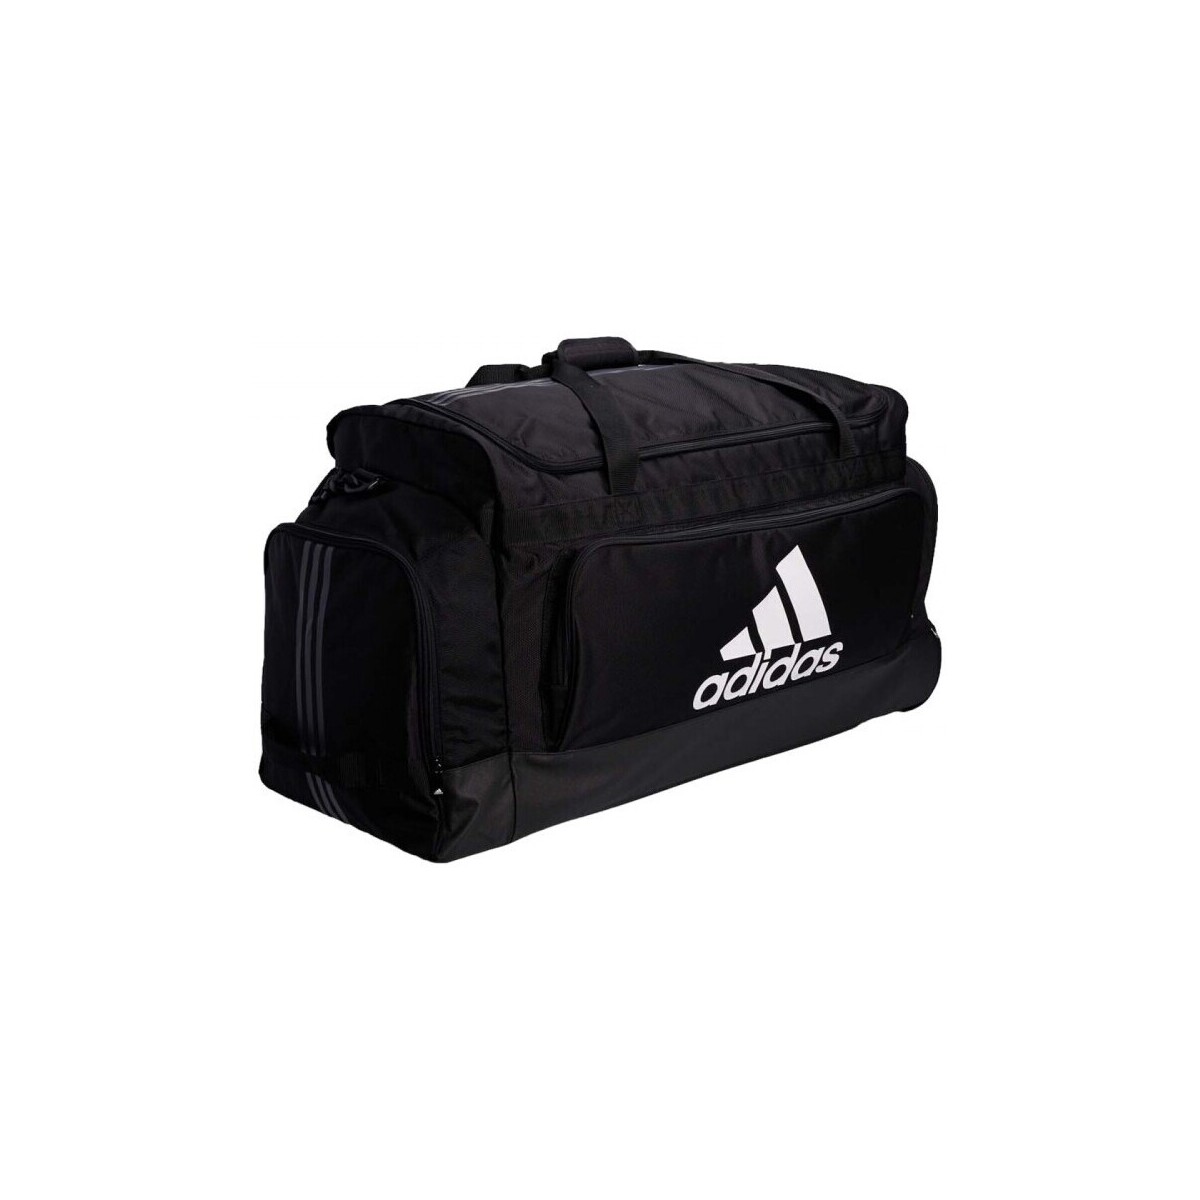 adidas Originals Noir Team Bag Xxlw sWswdcPI